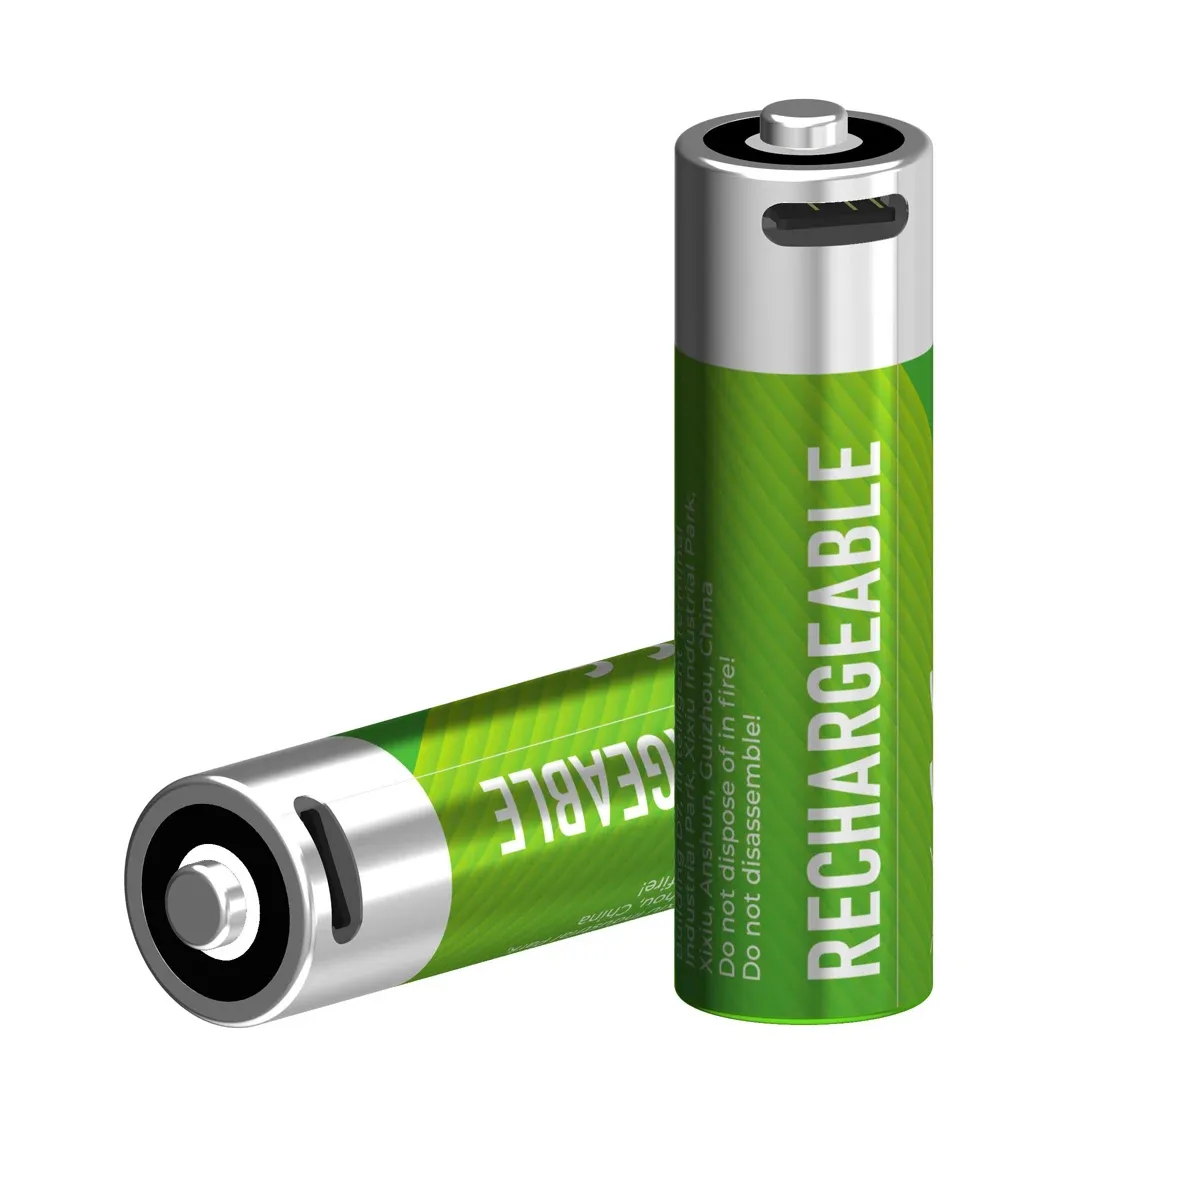 Buon prezzo un pacco con 4 batterie di tipo c batteria di carica AA 1.5V 2550mWh agli ioni di litio USB batterie ricaricabili